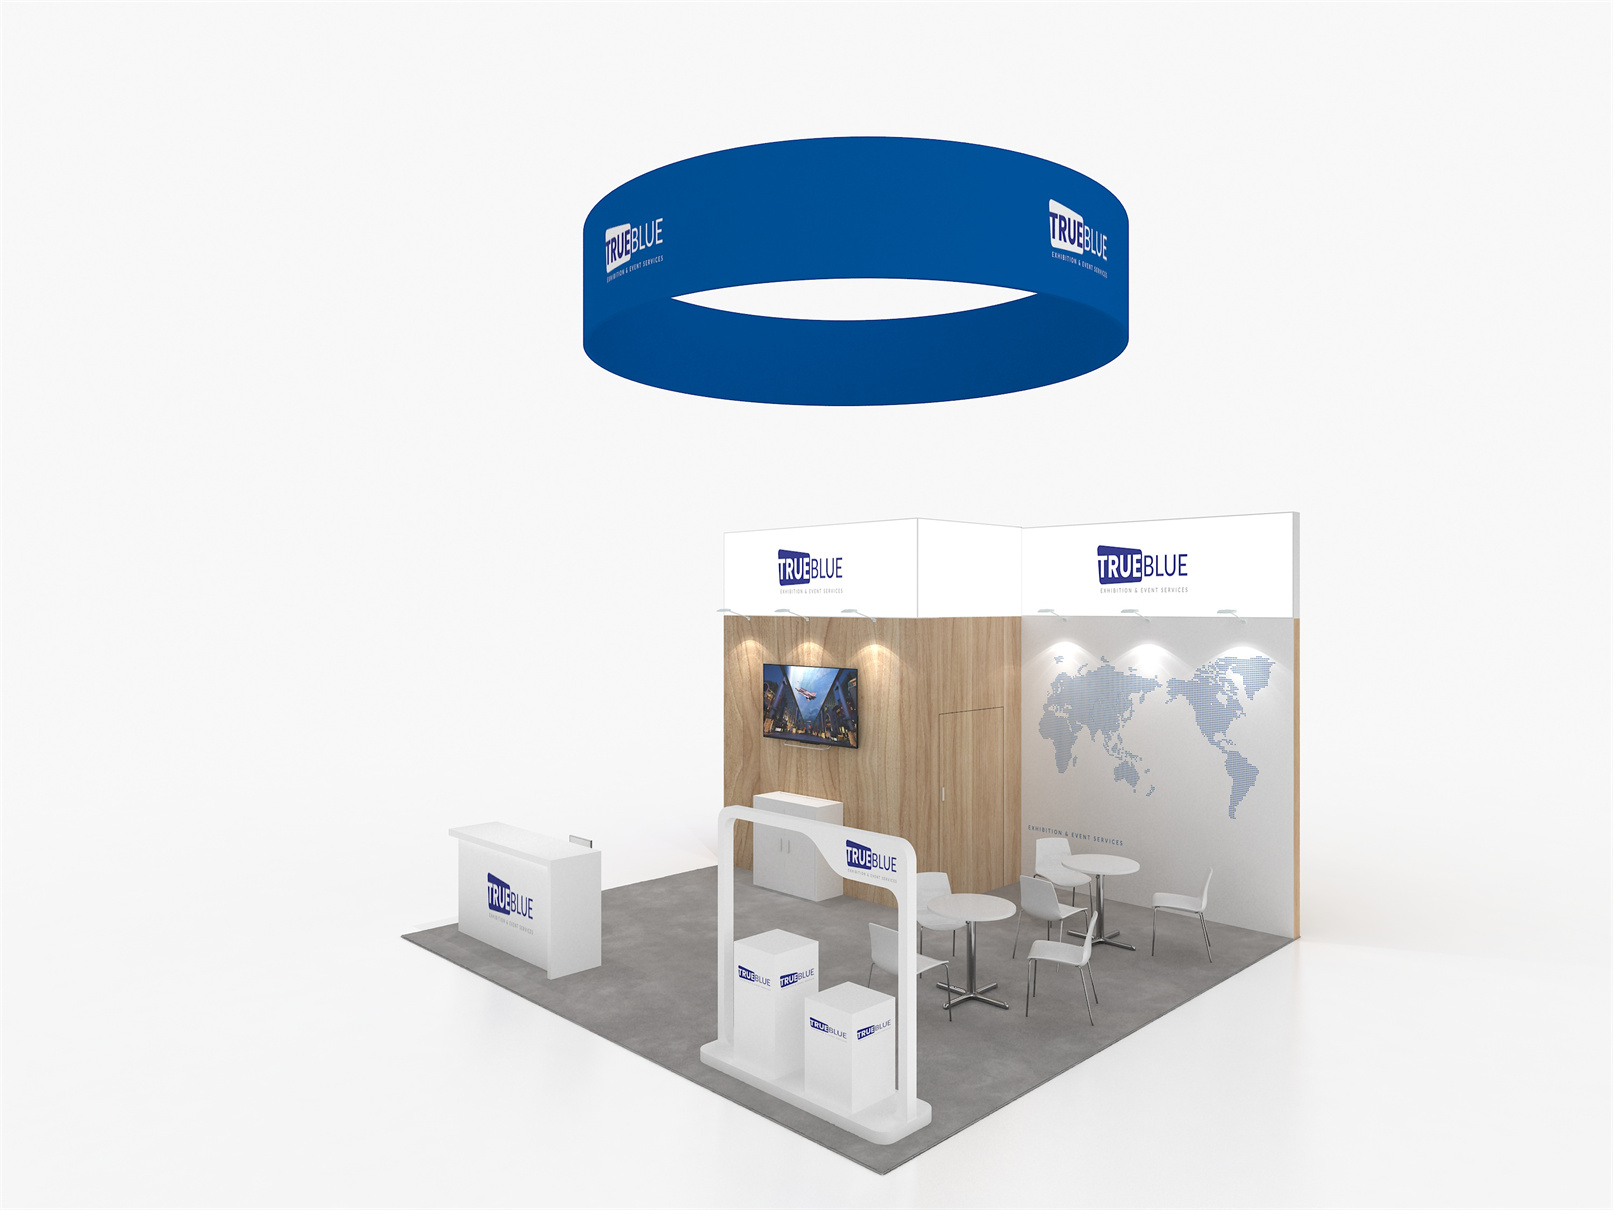 E2 20′ x 20′ Custom Trade Show Booth Design